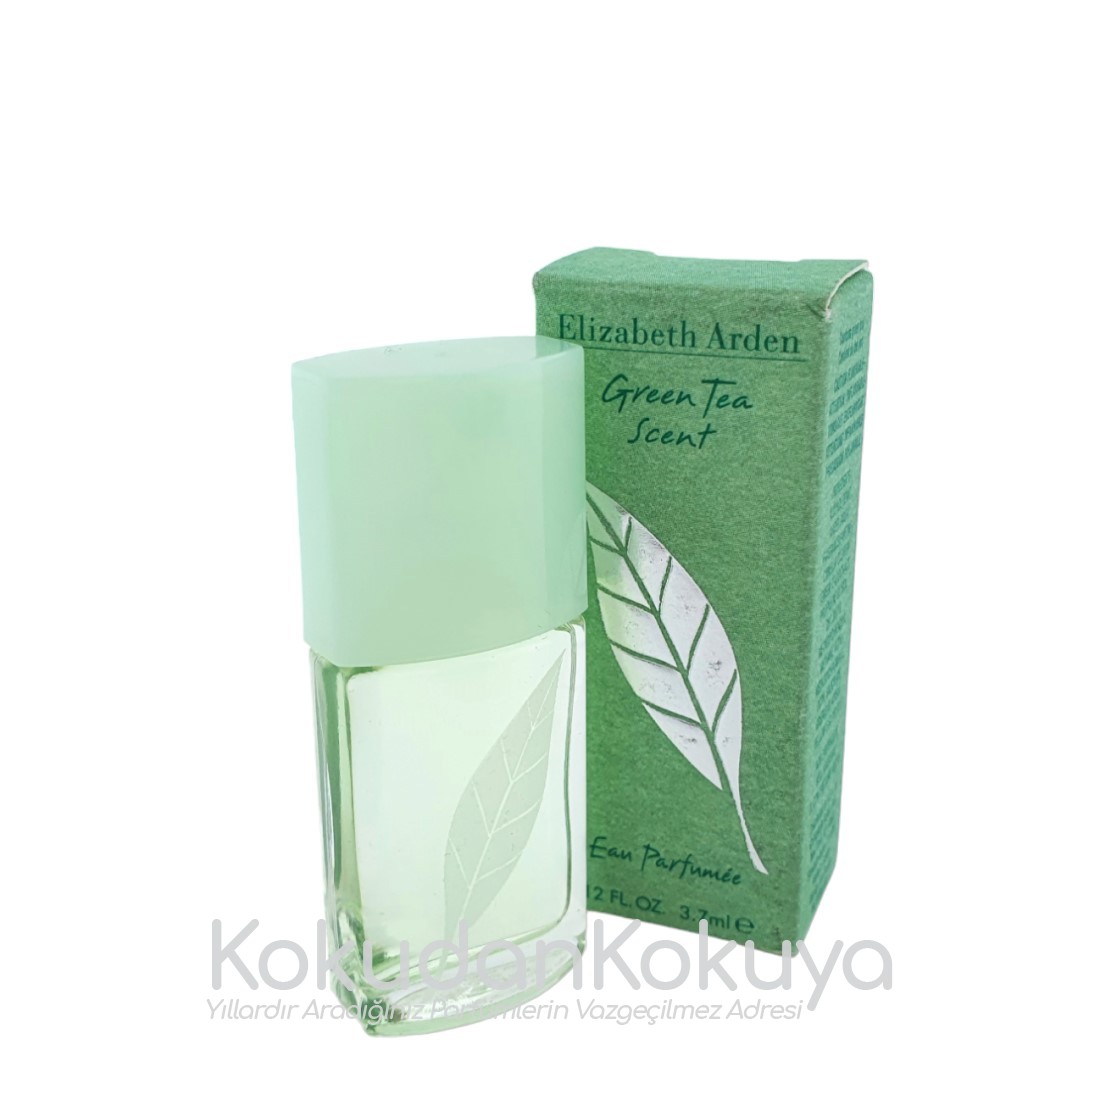 ELIZABETH ARDEN Green Tea (Vintage) Parfüm Kadın 3.75ml Minyatür (Mini Perfume) Dökme 